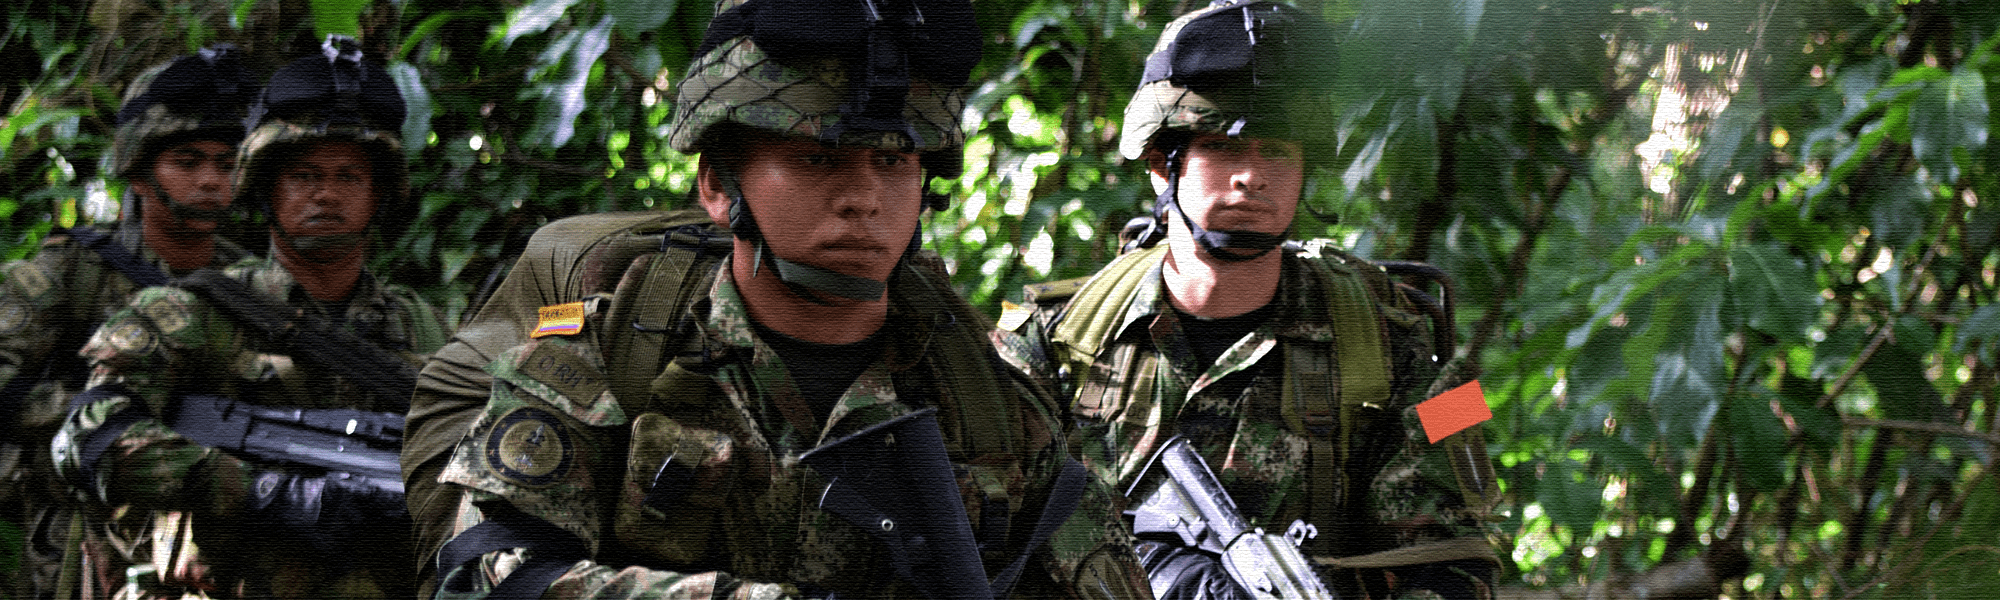 Ejército Nacional de Colombia